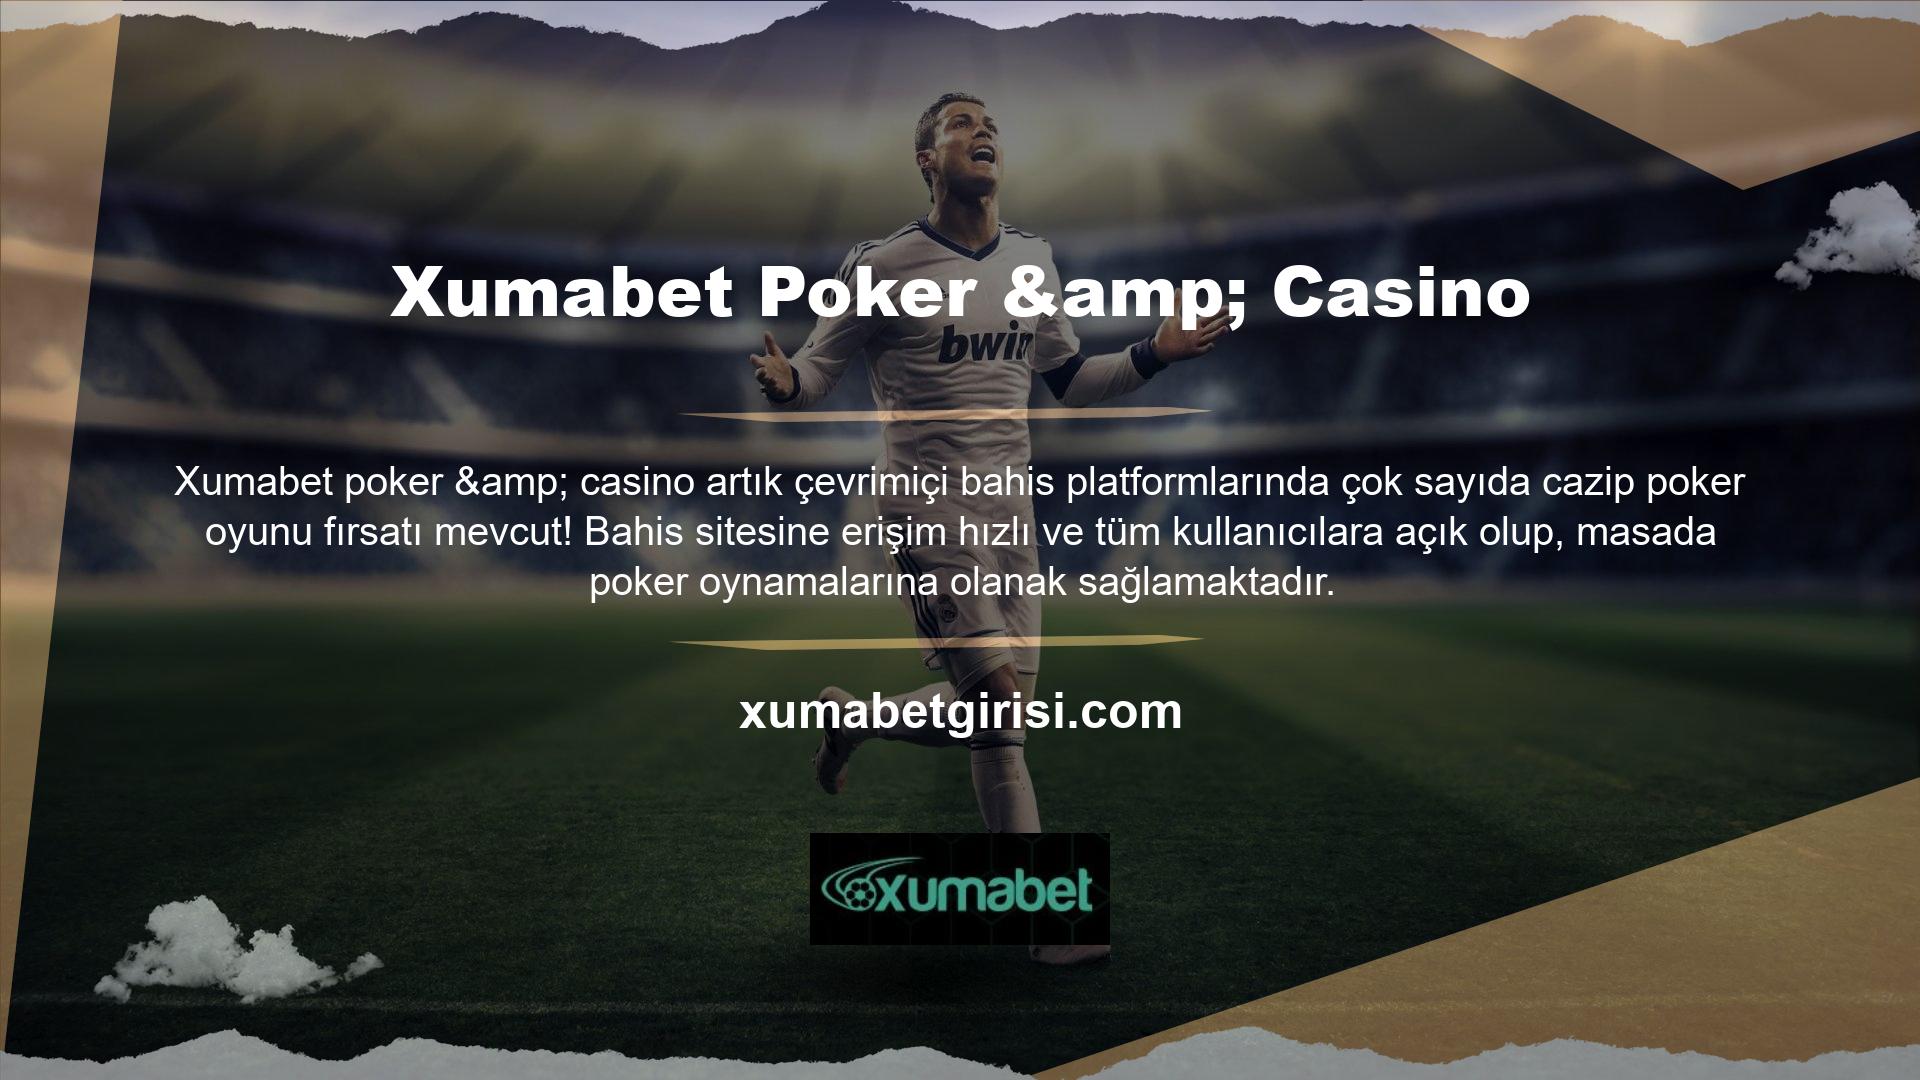 Çevrimiçi bir casino platformuna katılarak poker olarak bilinen popüler casino oyunu formatına katılabilirsiniz